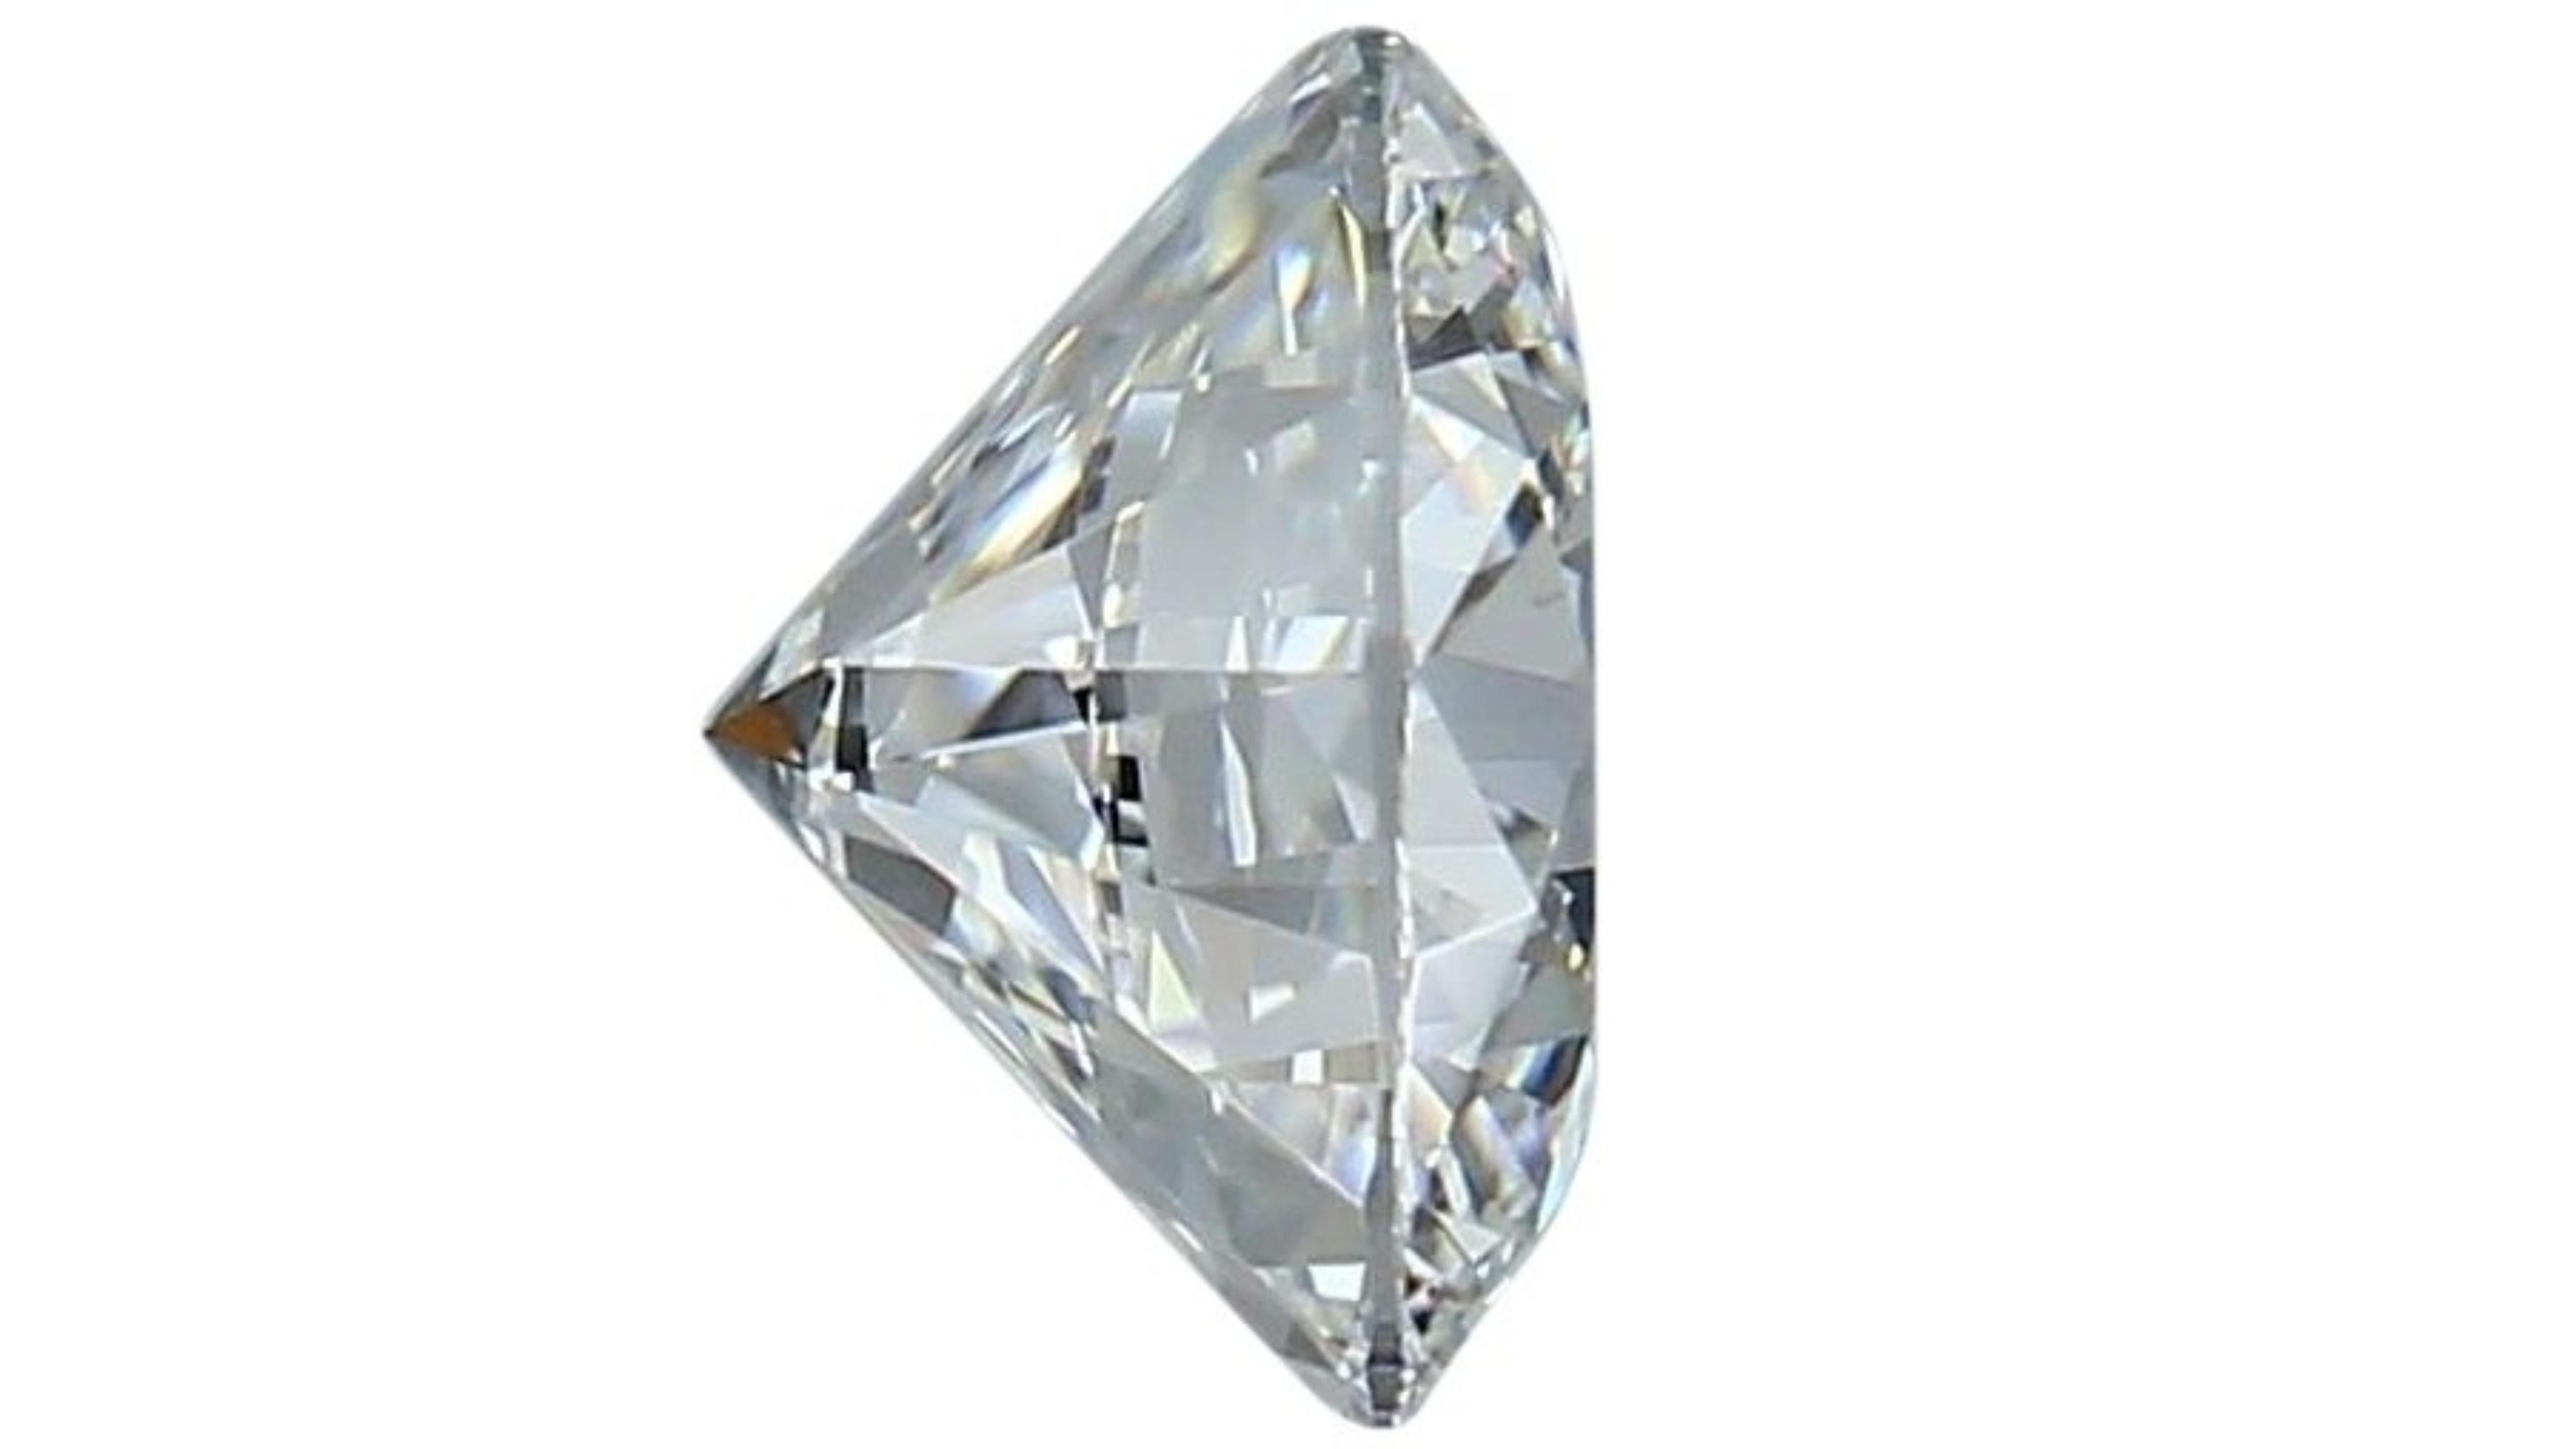 Sparkling .6 carat round brilliant cut natural diamond 5